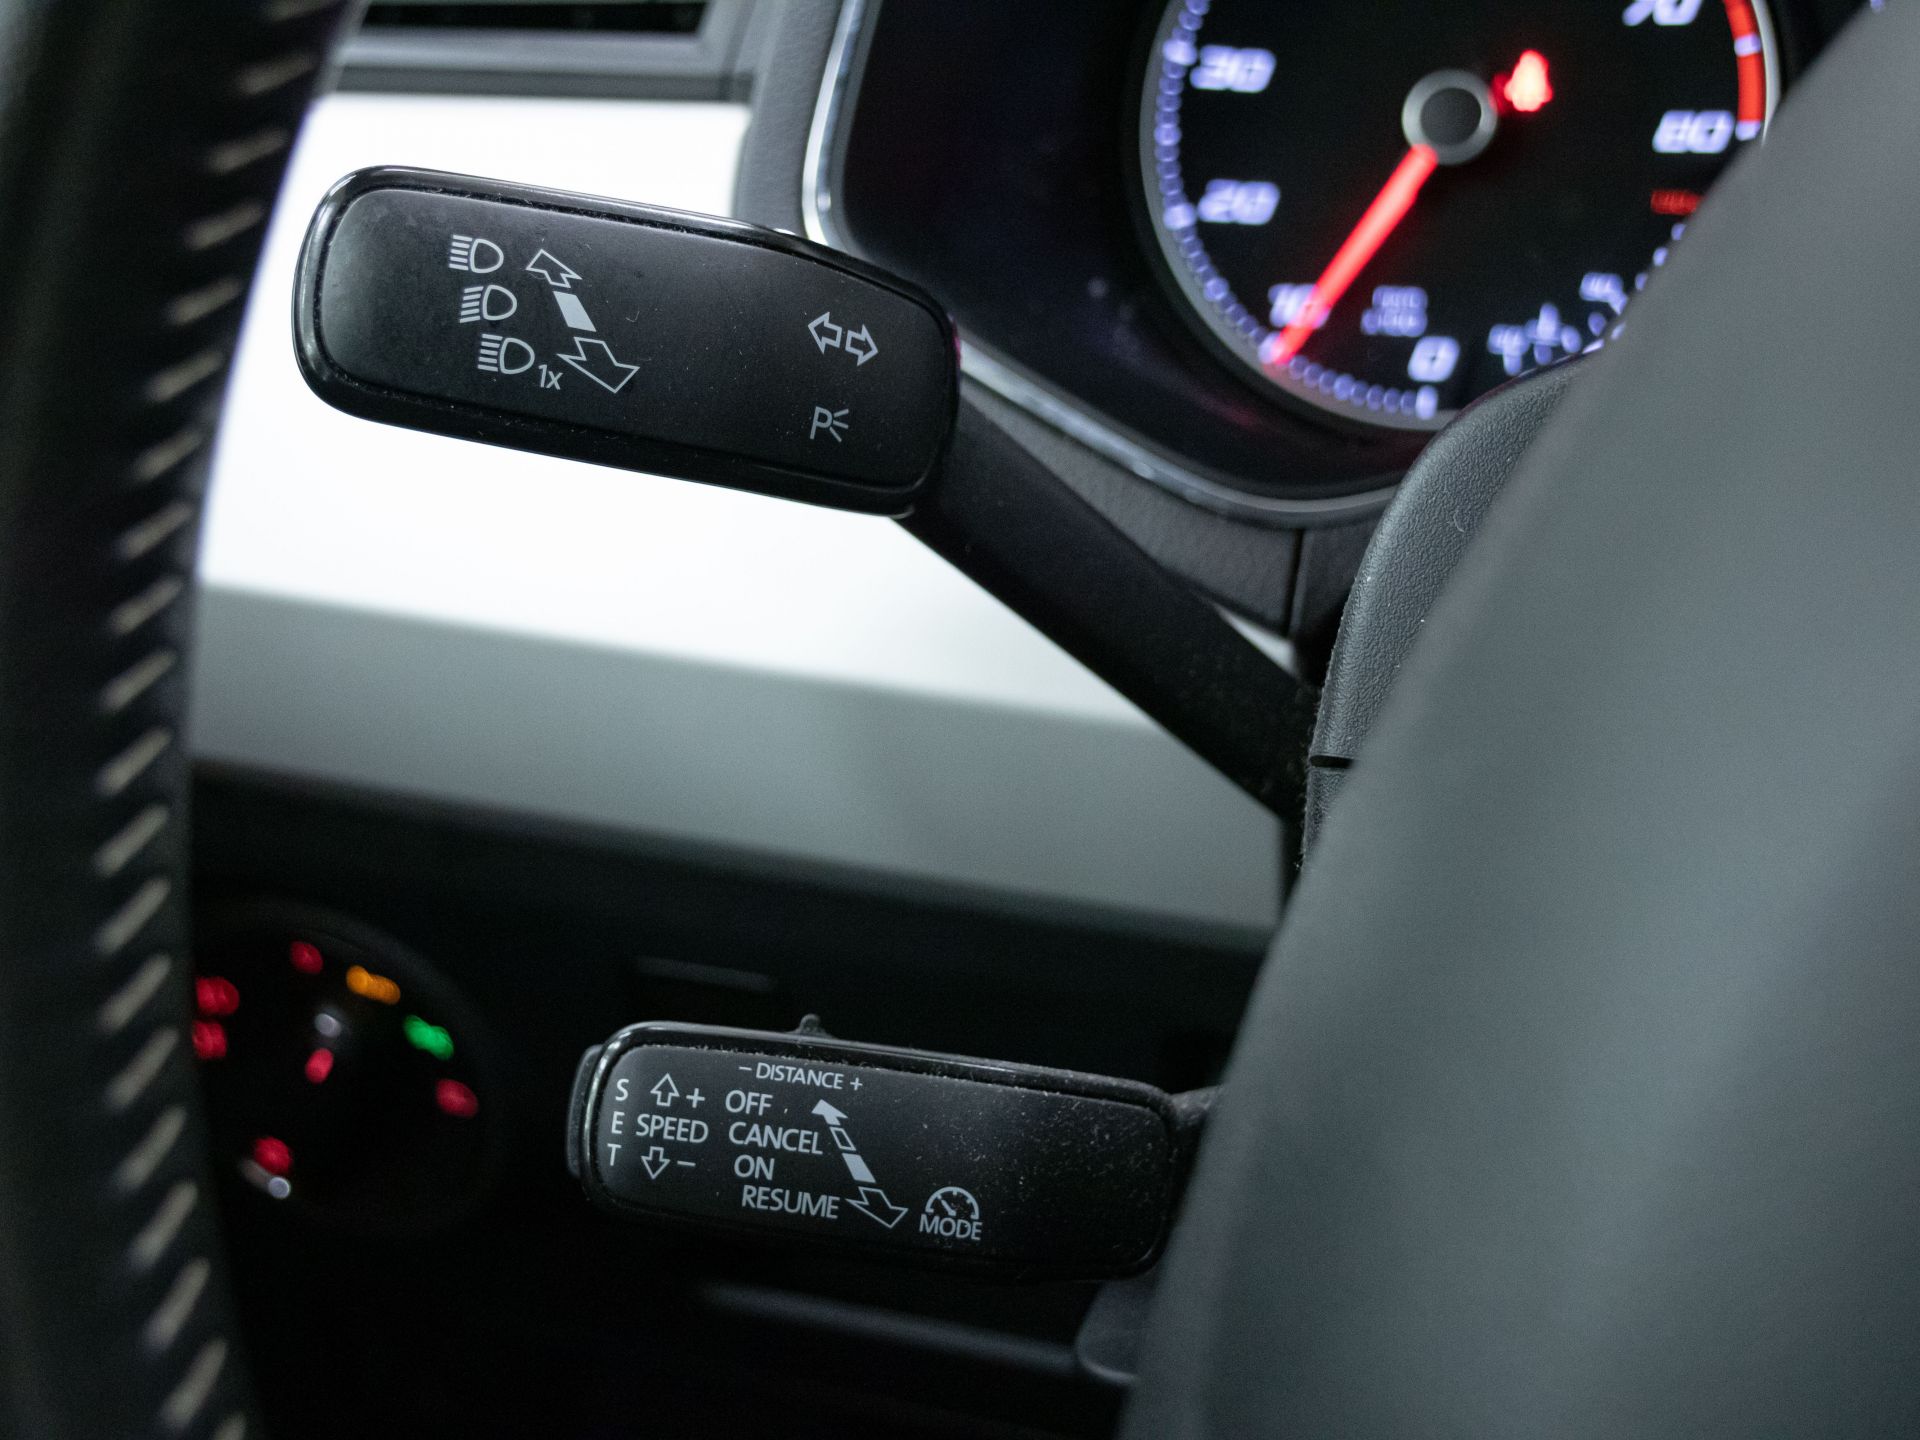 SEAT Arona 1.0 TSI 85kW (115CV) Xcellence Ecomotive